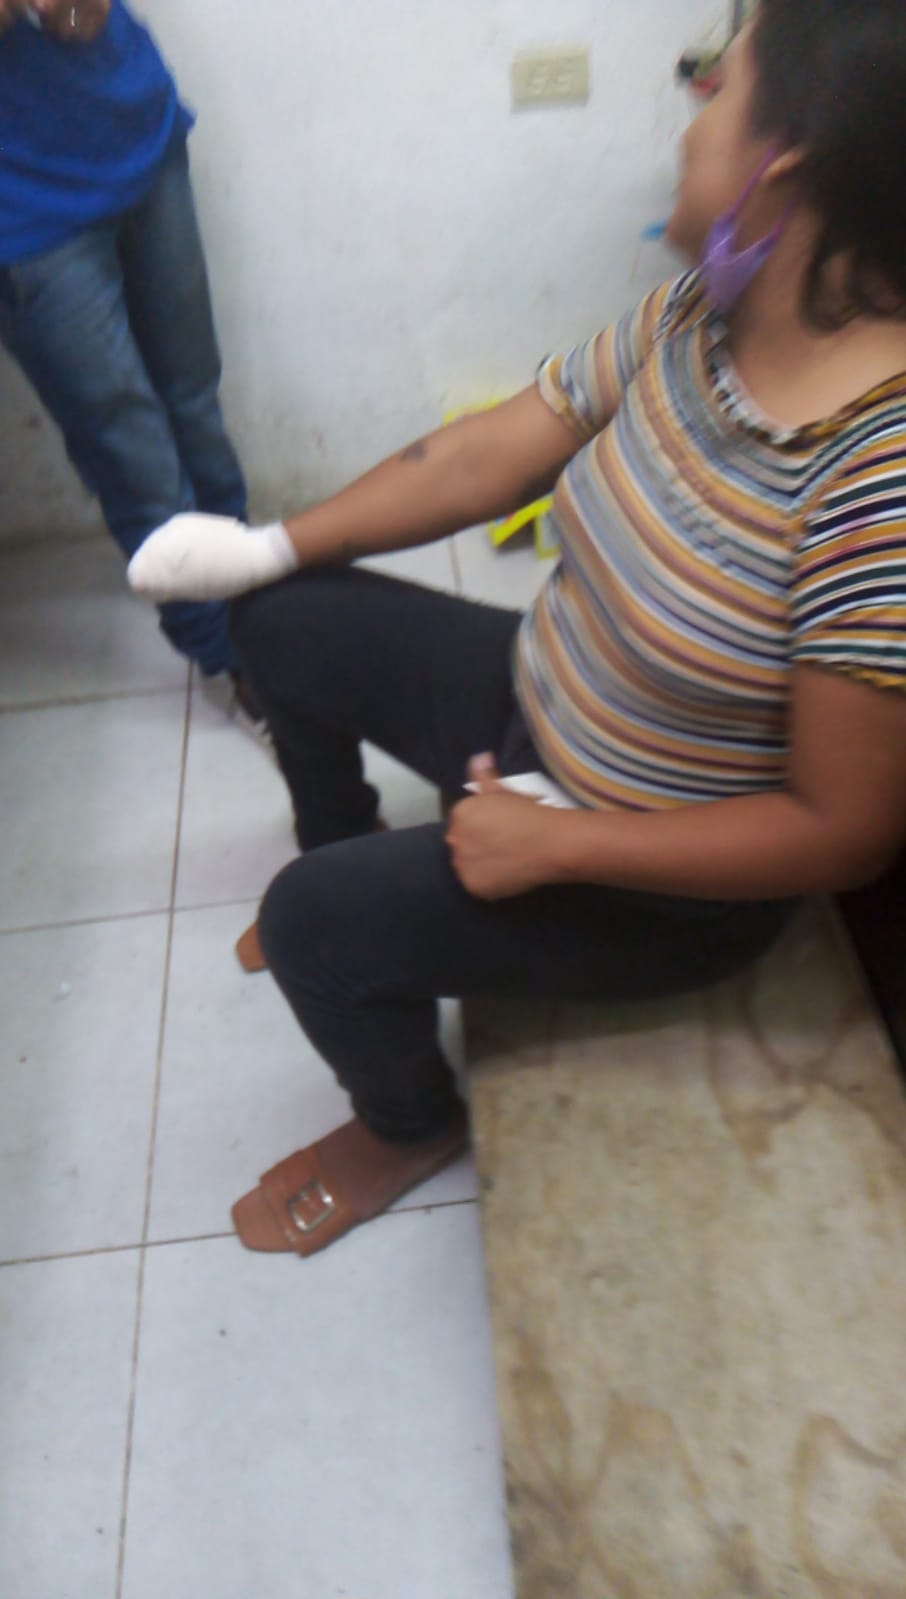 Trasladan a mujer con herida cortante en la mano al hospital de Chetumal